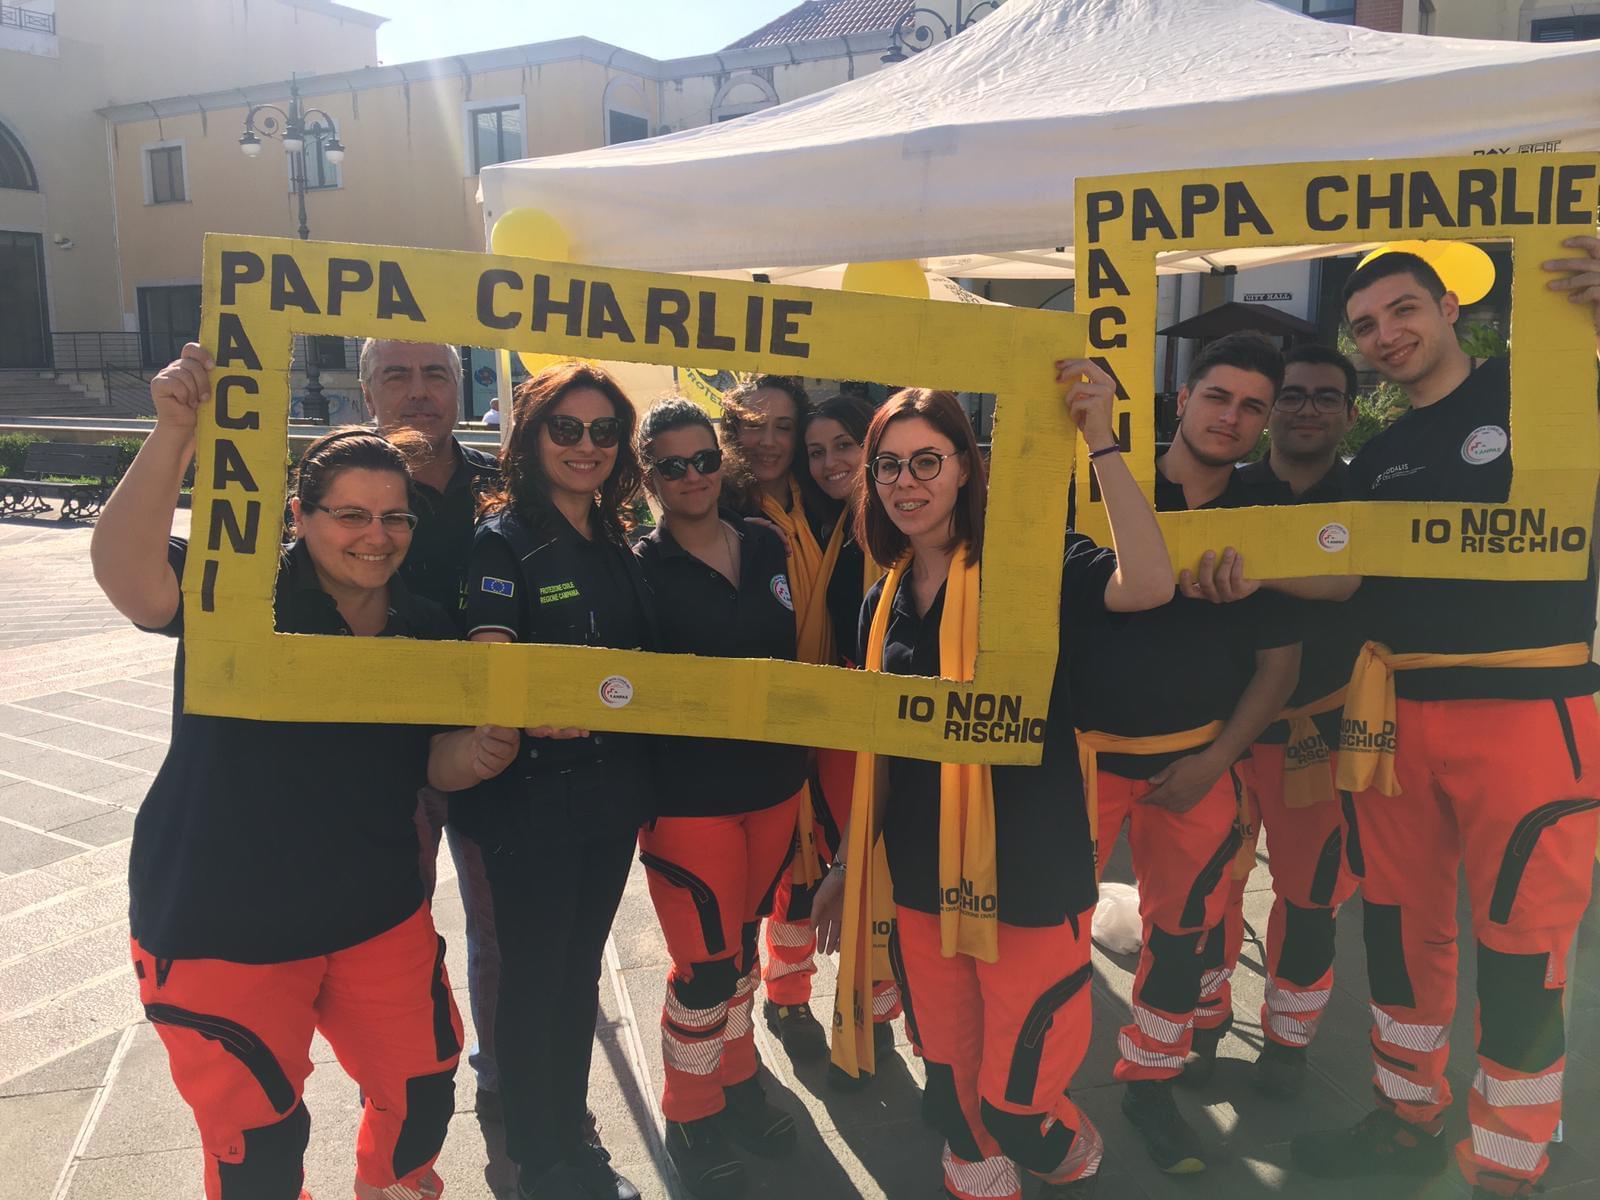 Pagani: Papa Charlie in piazza per campagna “Io non rischio-buone pratiche di protezione civile”